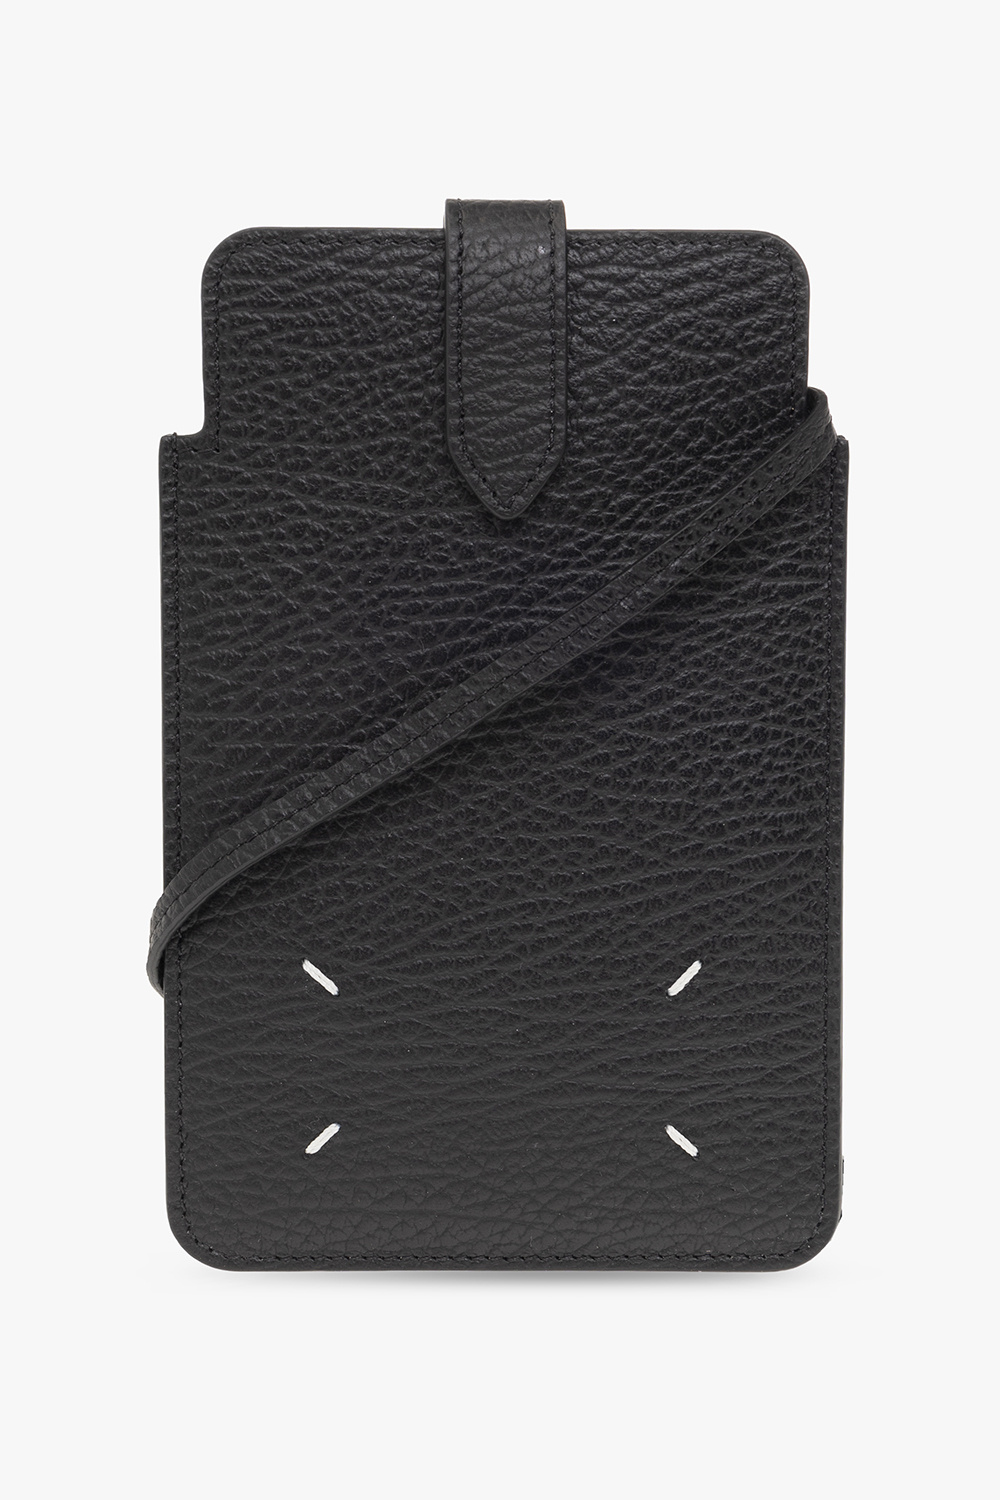 Maison Margiela Phone pouch with strap | Men's Accessorie | Vitkac